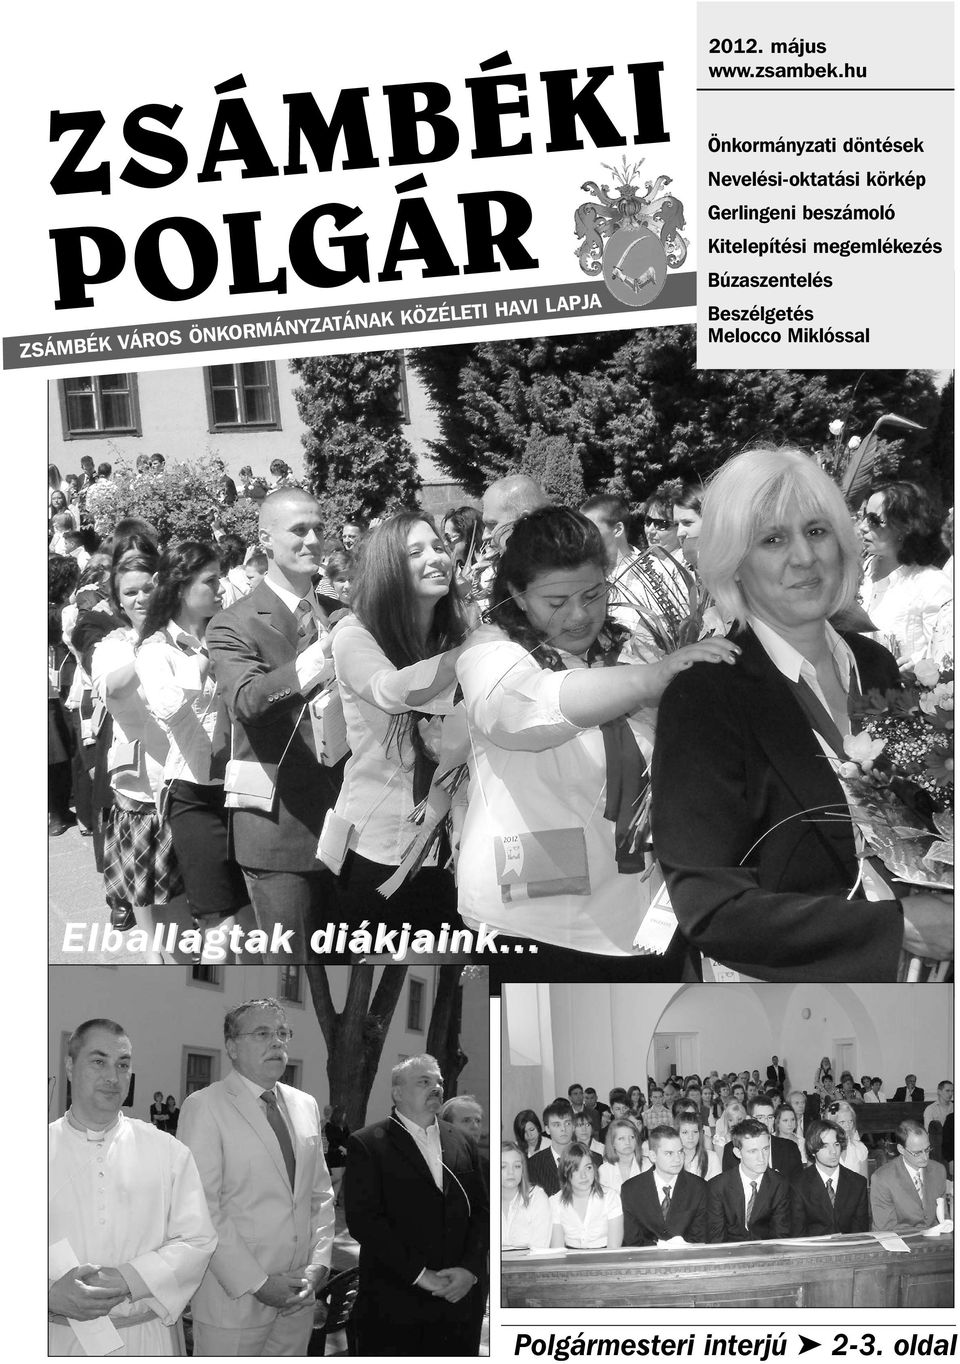 hu Önkormányzati döntések Nevelési-oktatási körkép Gerlingeni beszámoló